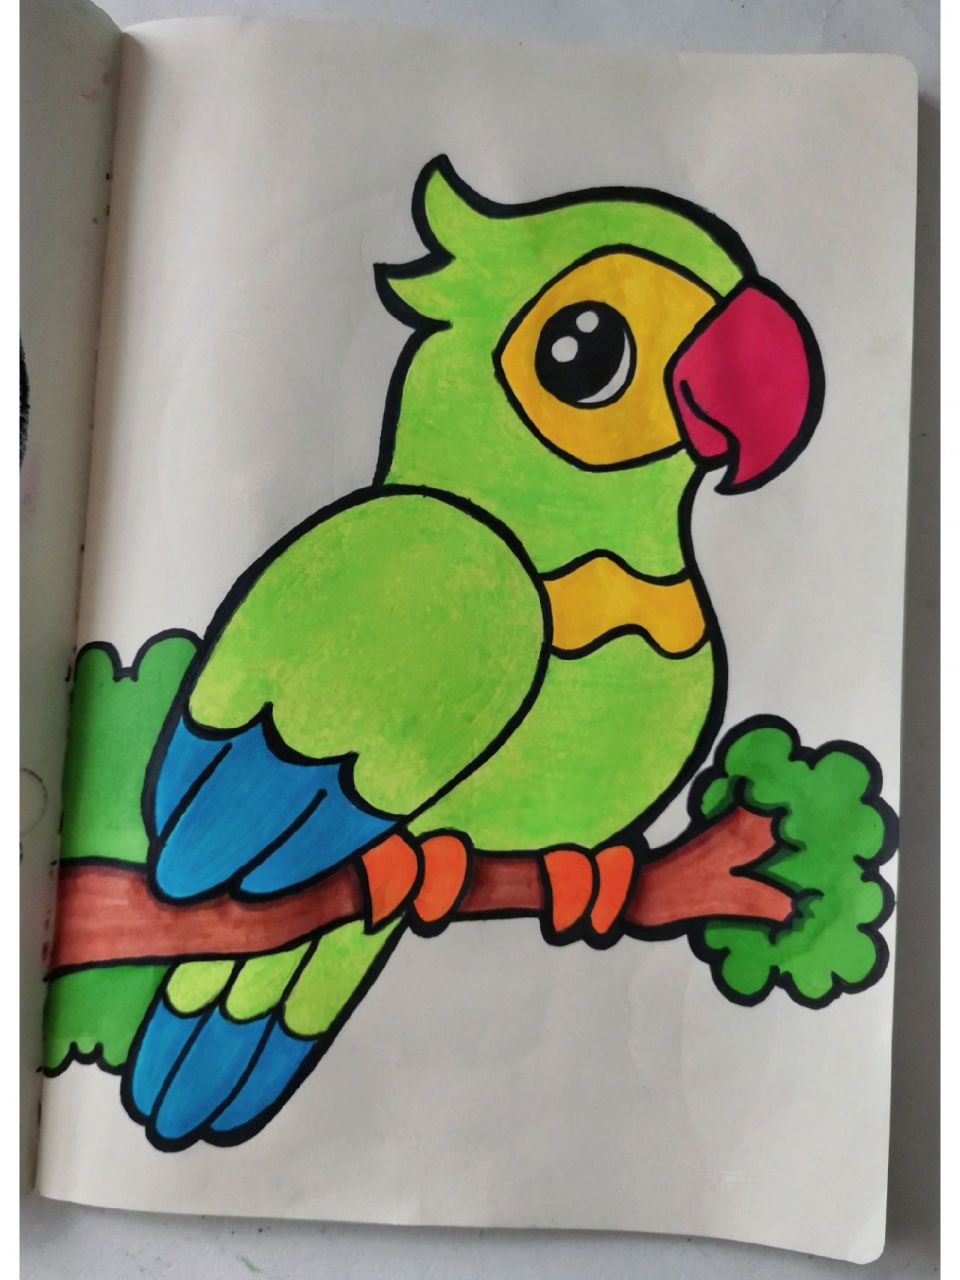 鹦鹉的简单画法图图片